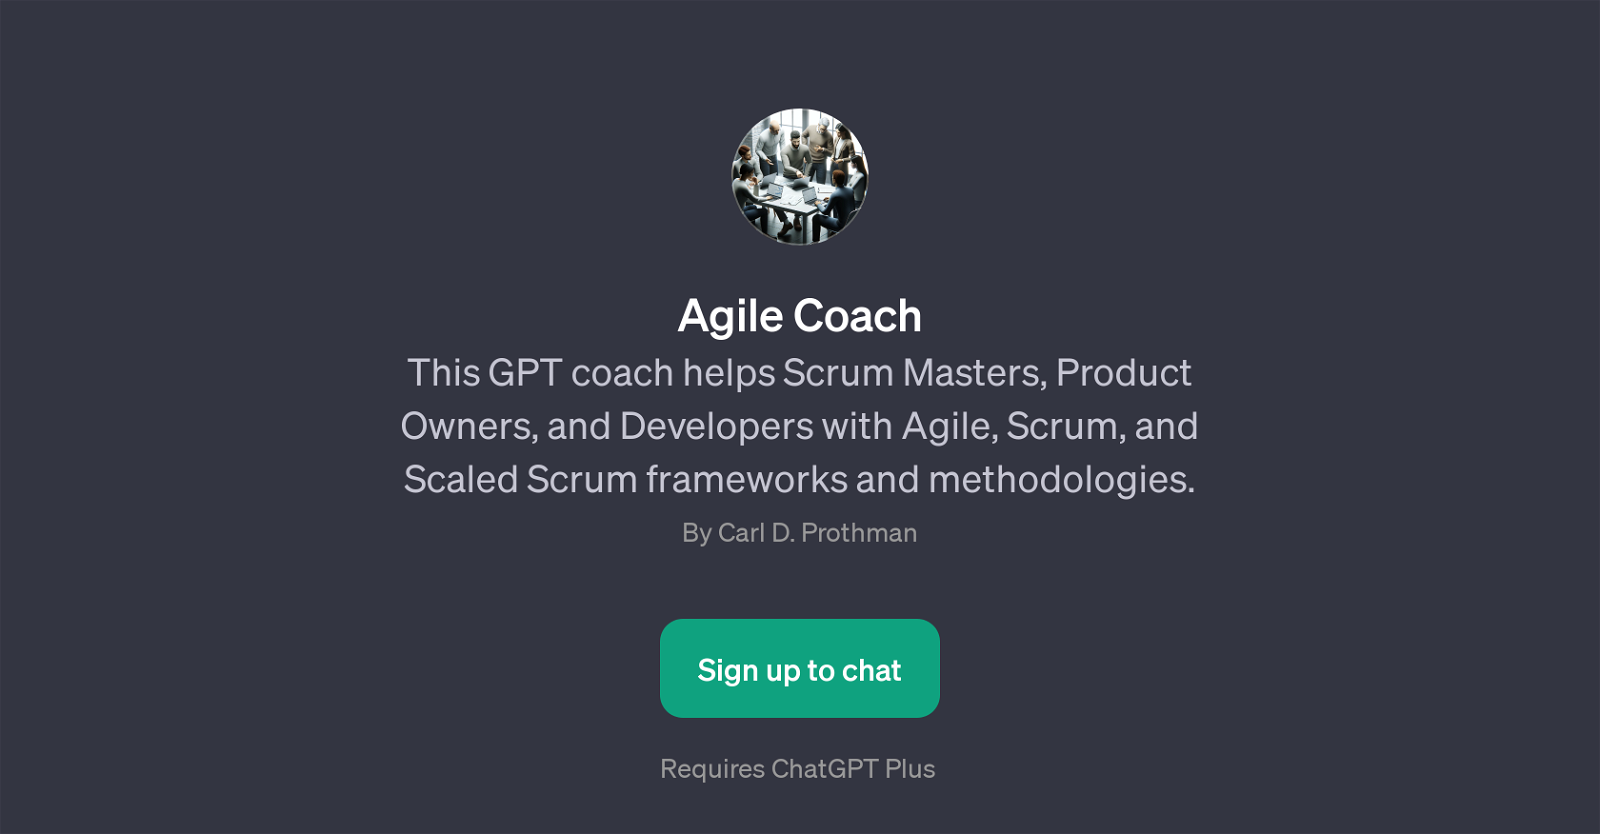 Agile Coach website